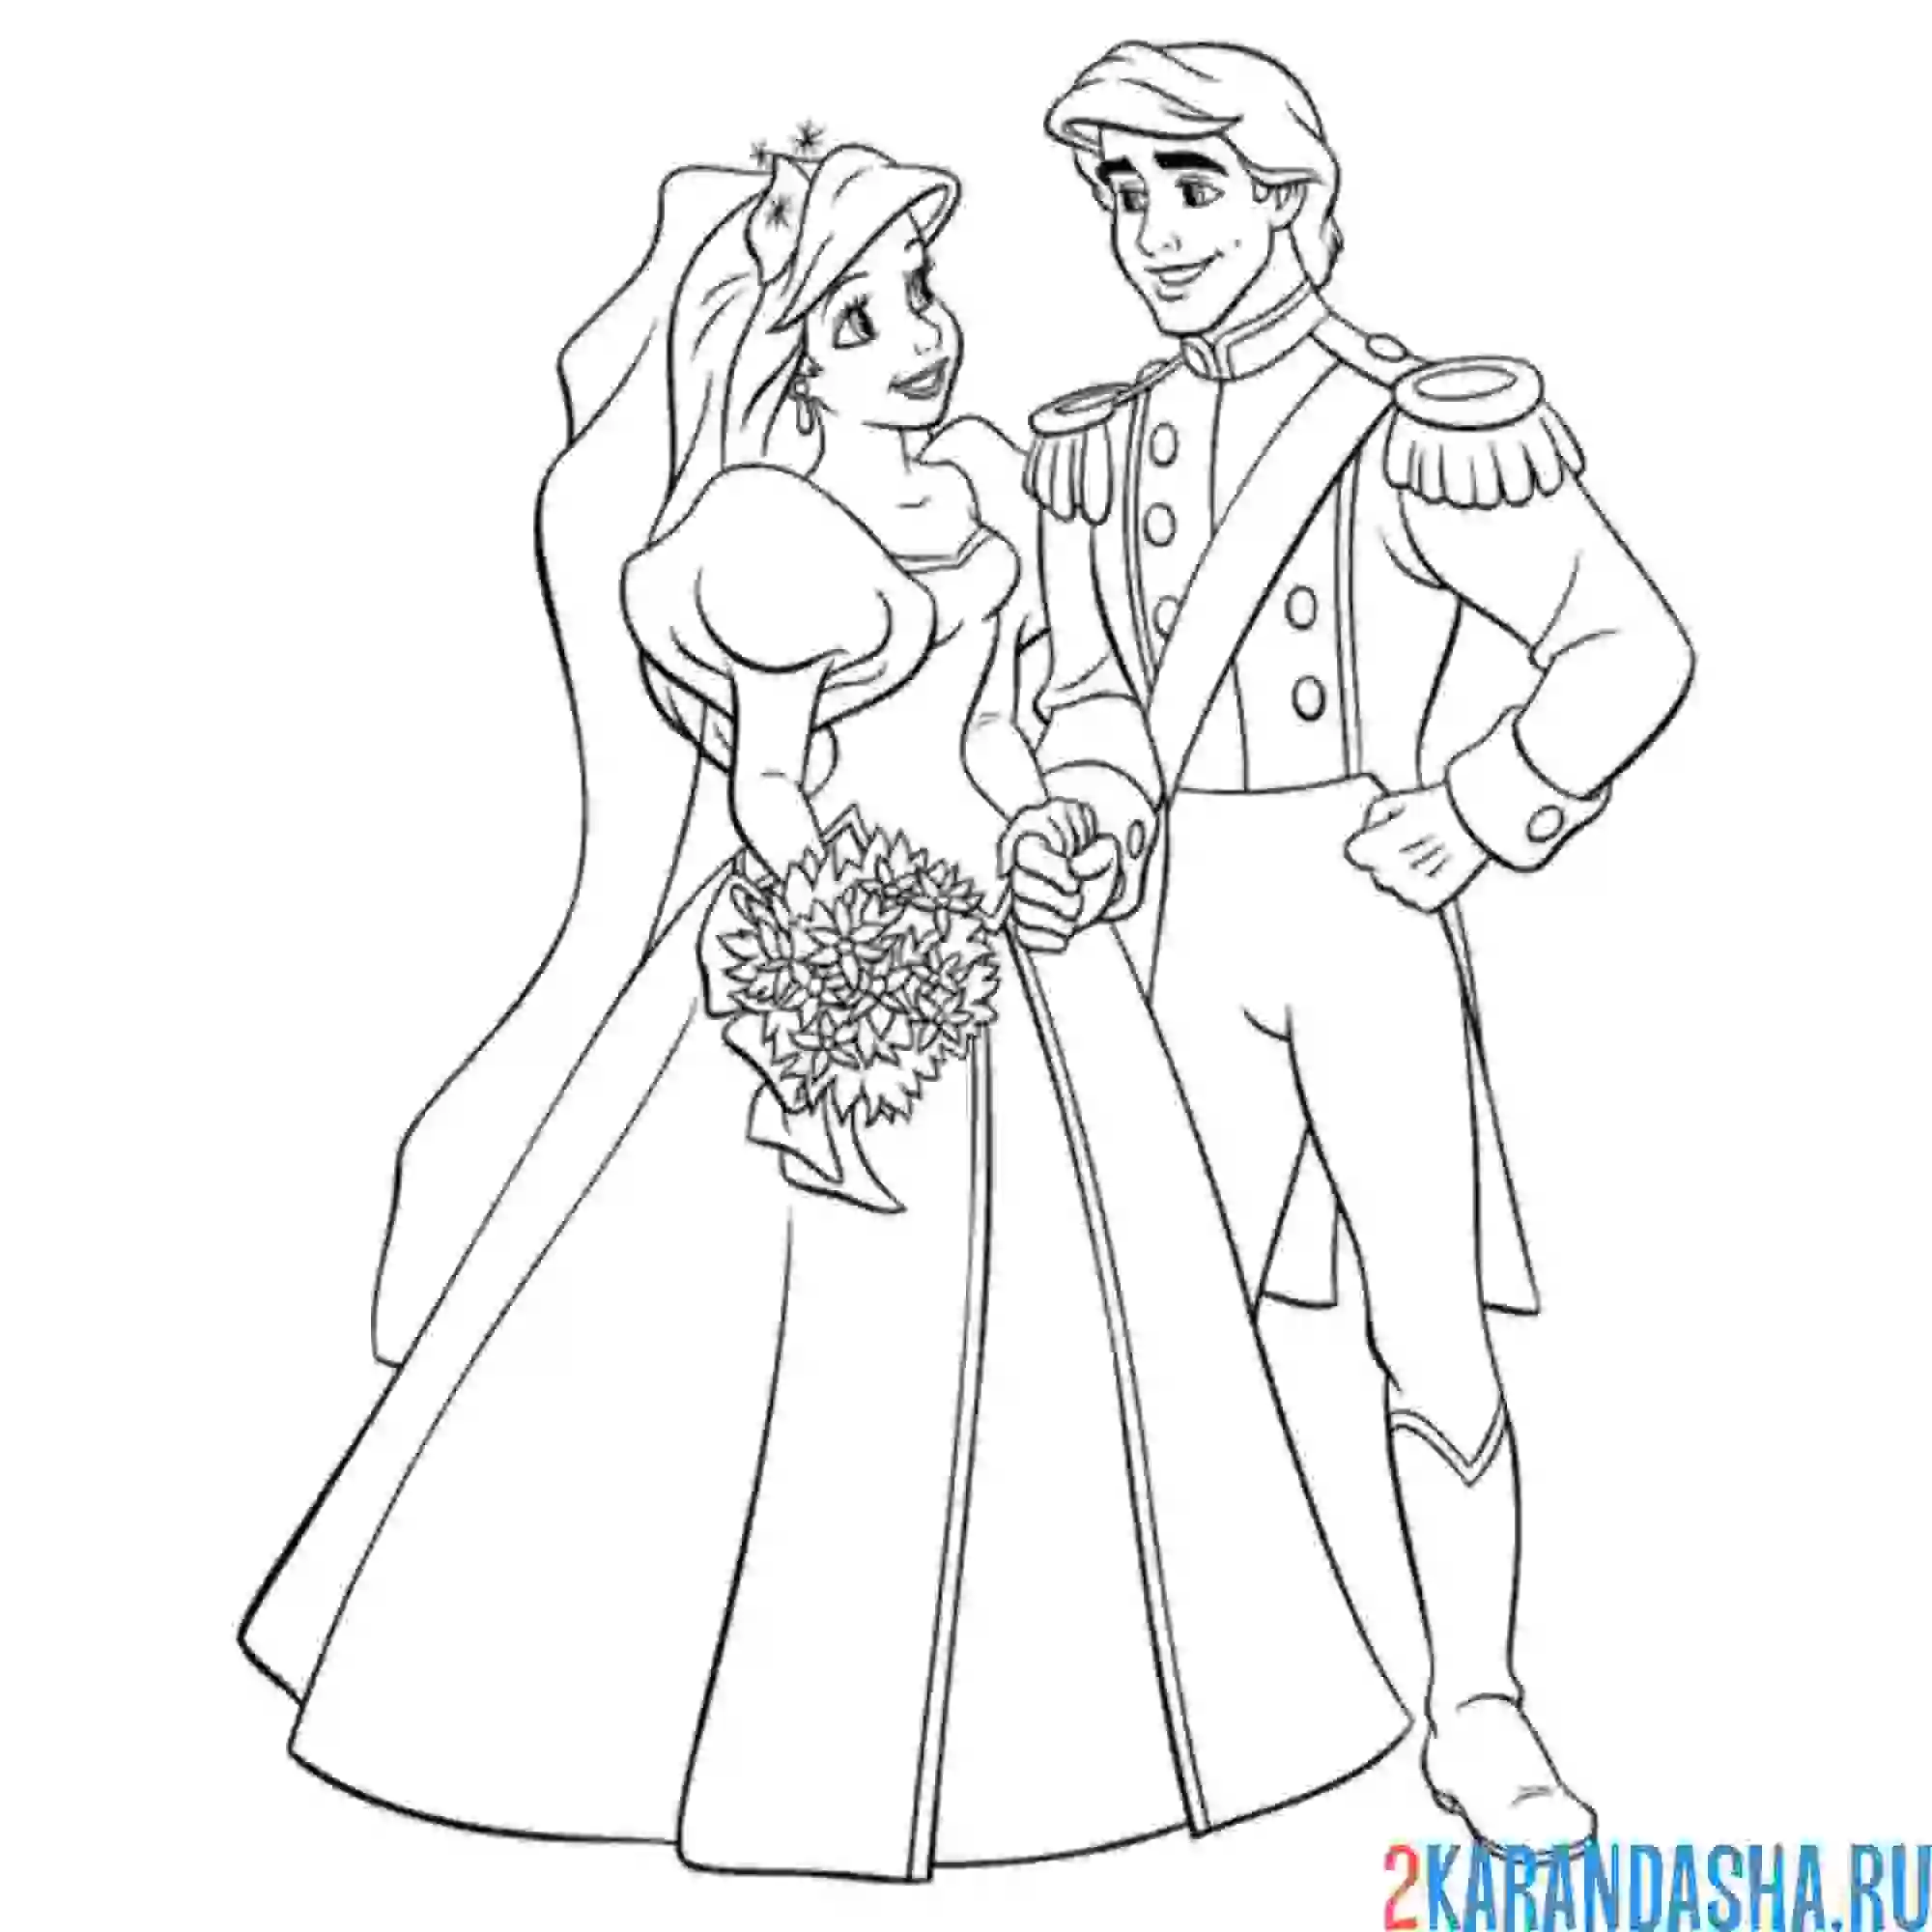 Раскраска свадьба ариэль и принца